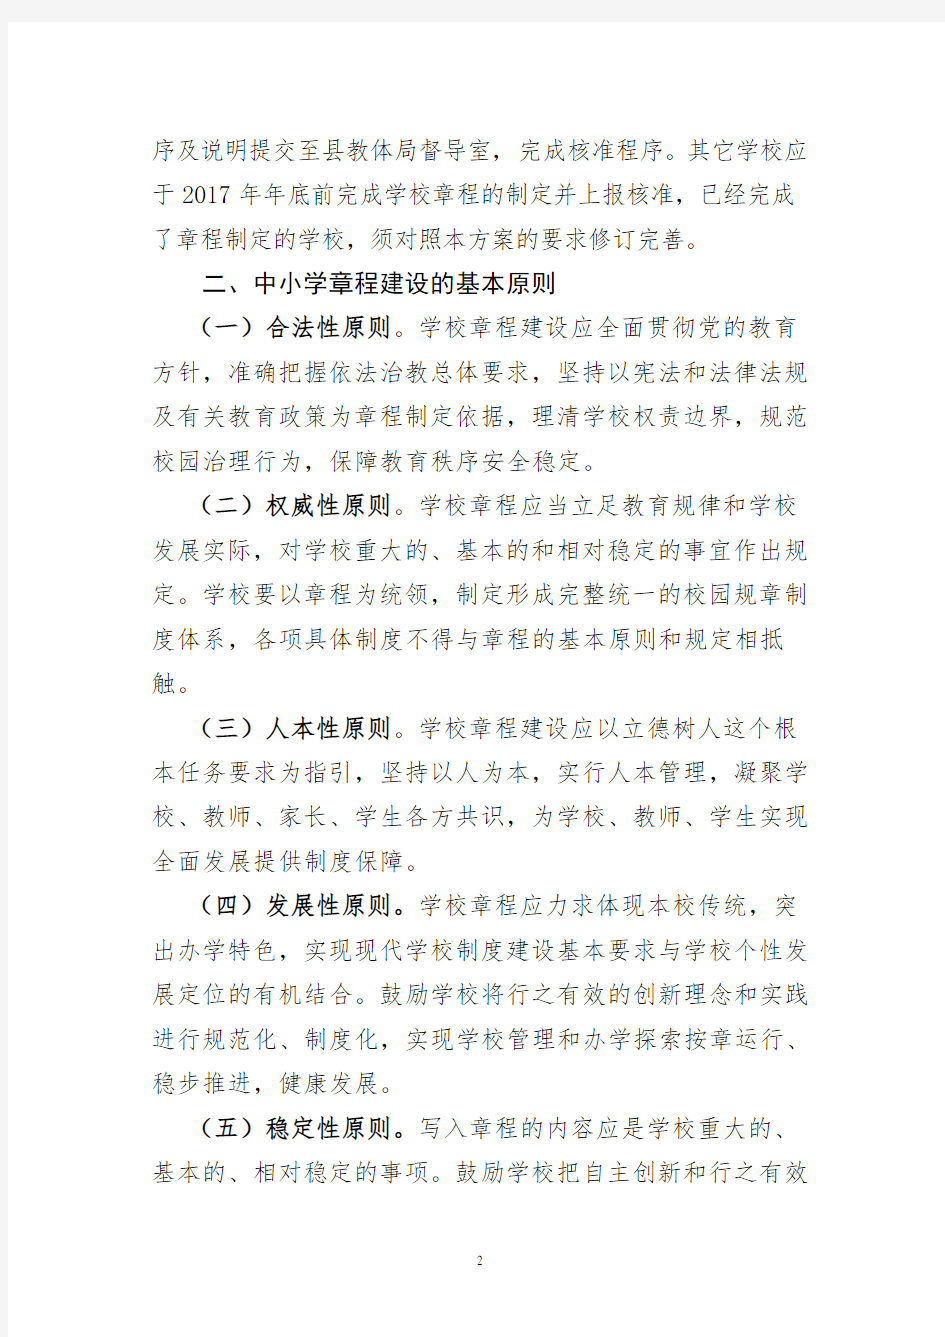 镇平县中小学章程建设工作方案 (1)